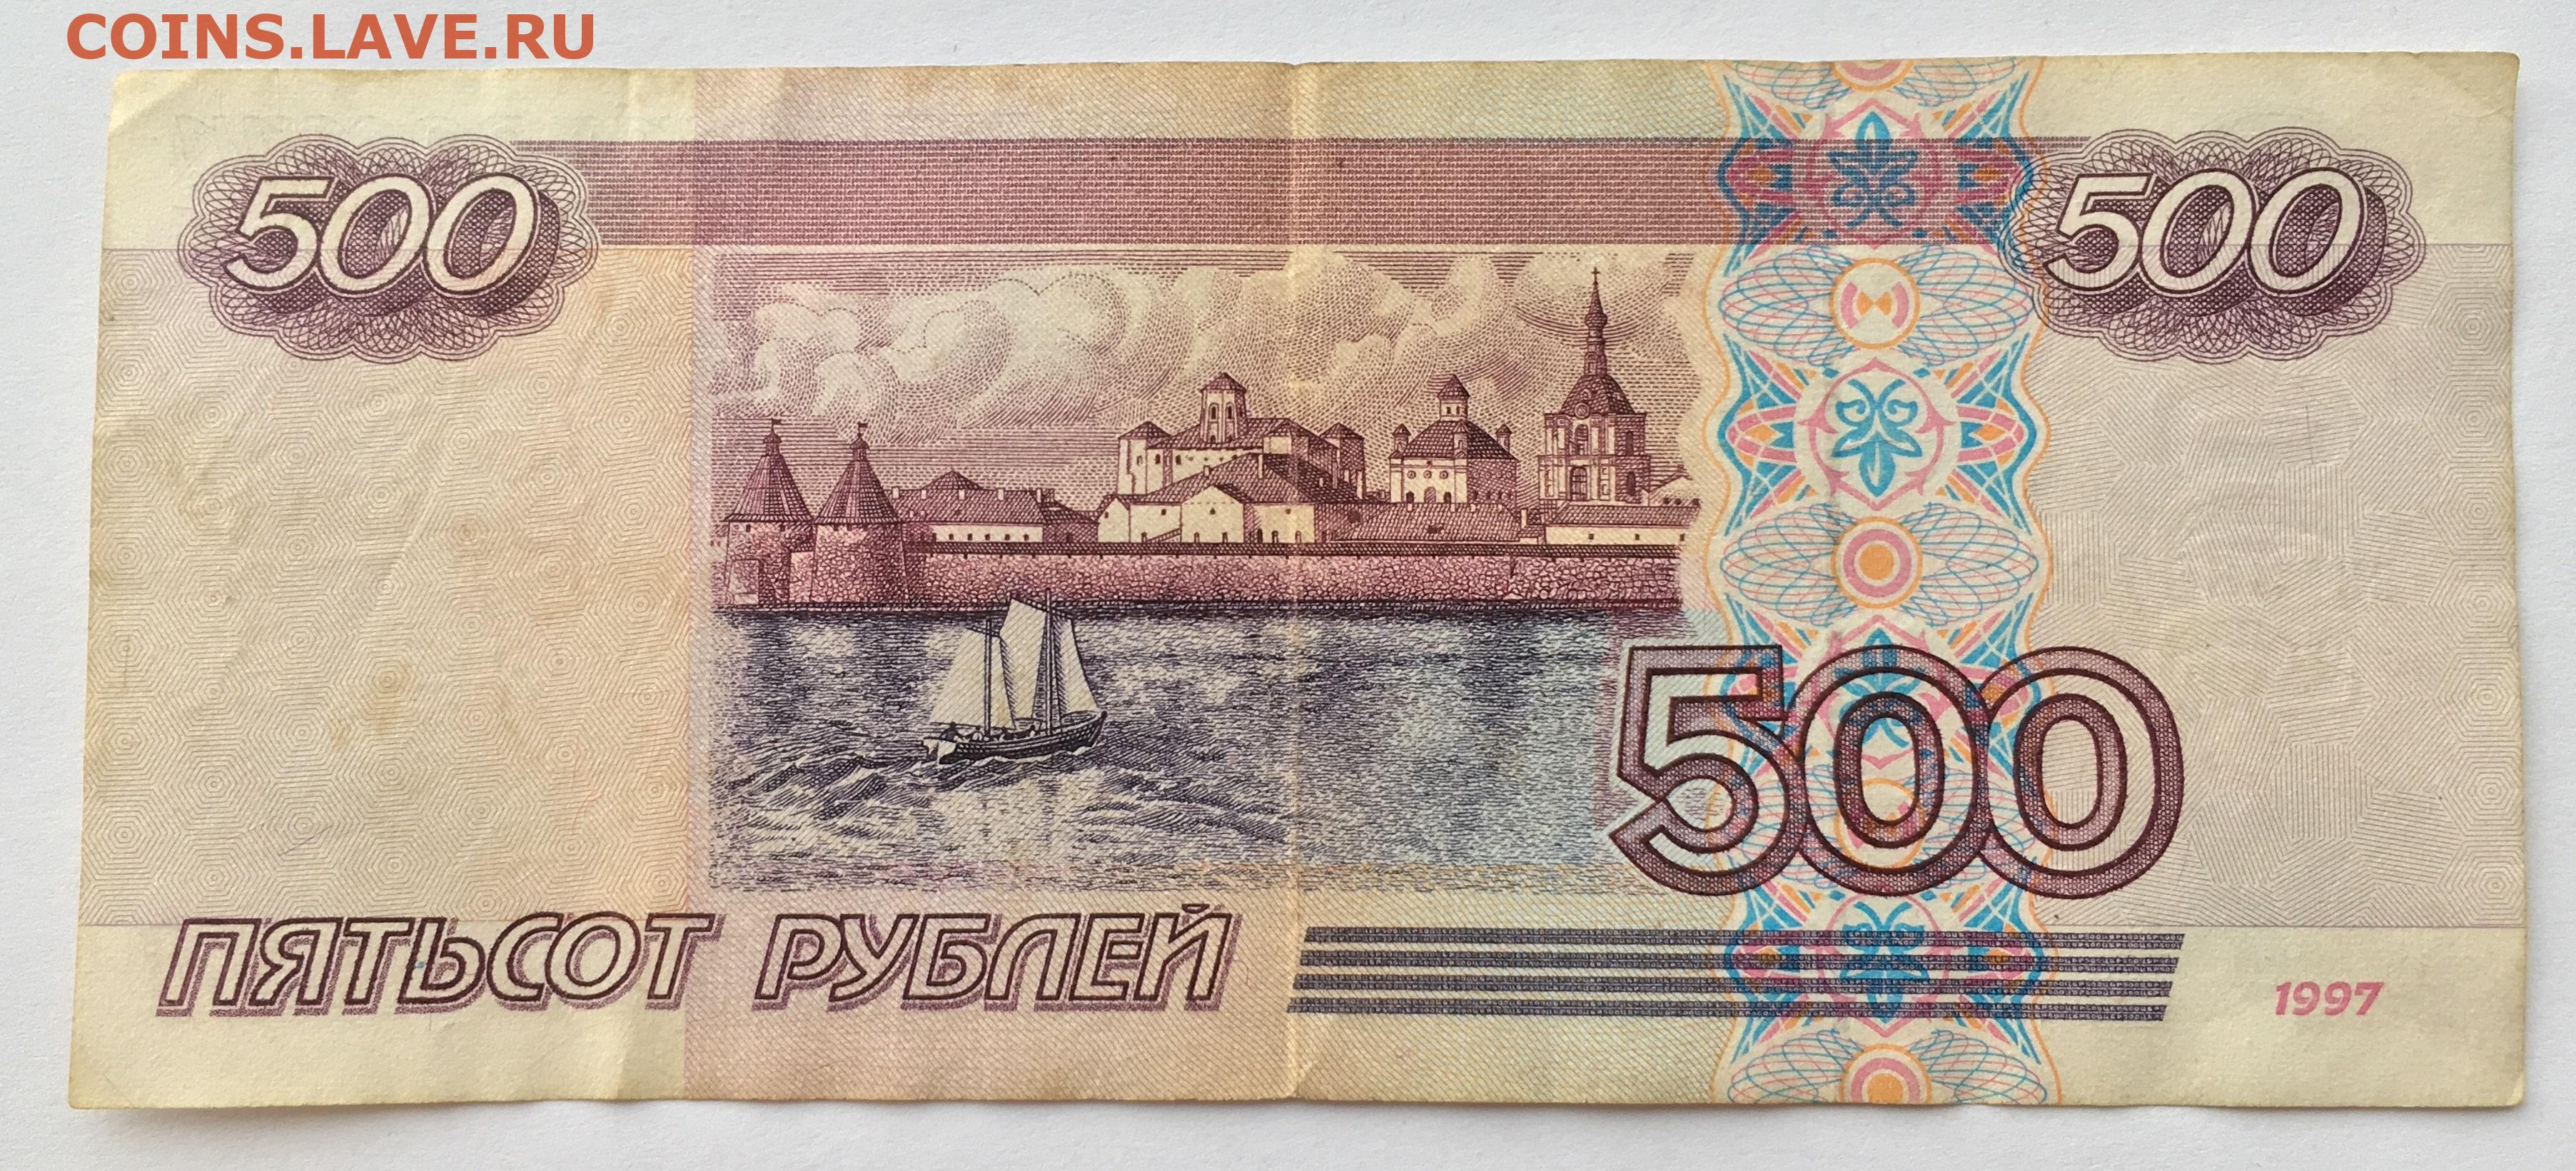 Верни 500 рублей. 500 Рублей 1997 (модификация 2004 года). Купюры РФ 500рб. Купюры номиналом 500 рублей 1997 года.